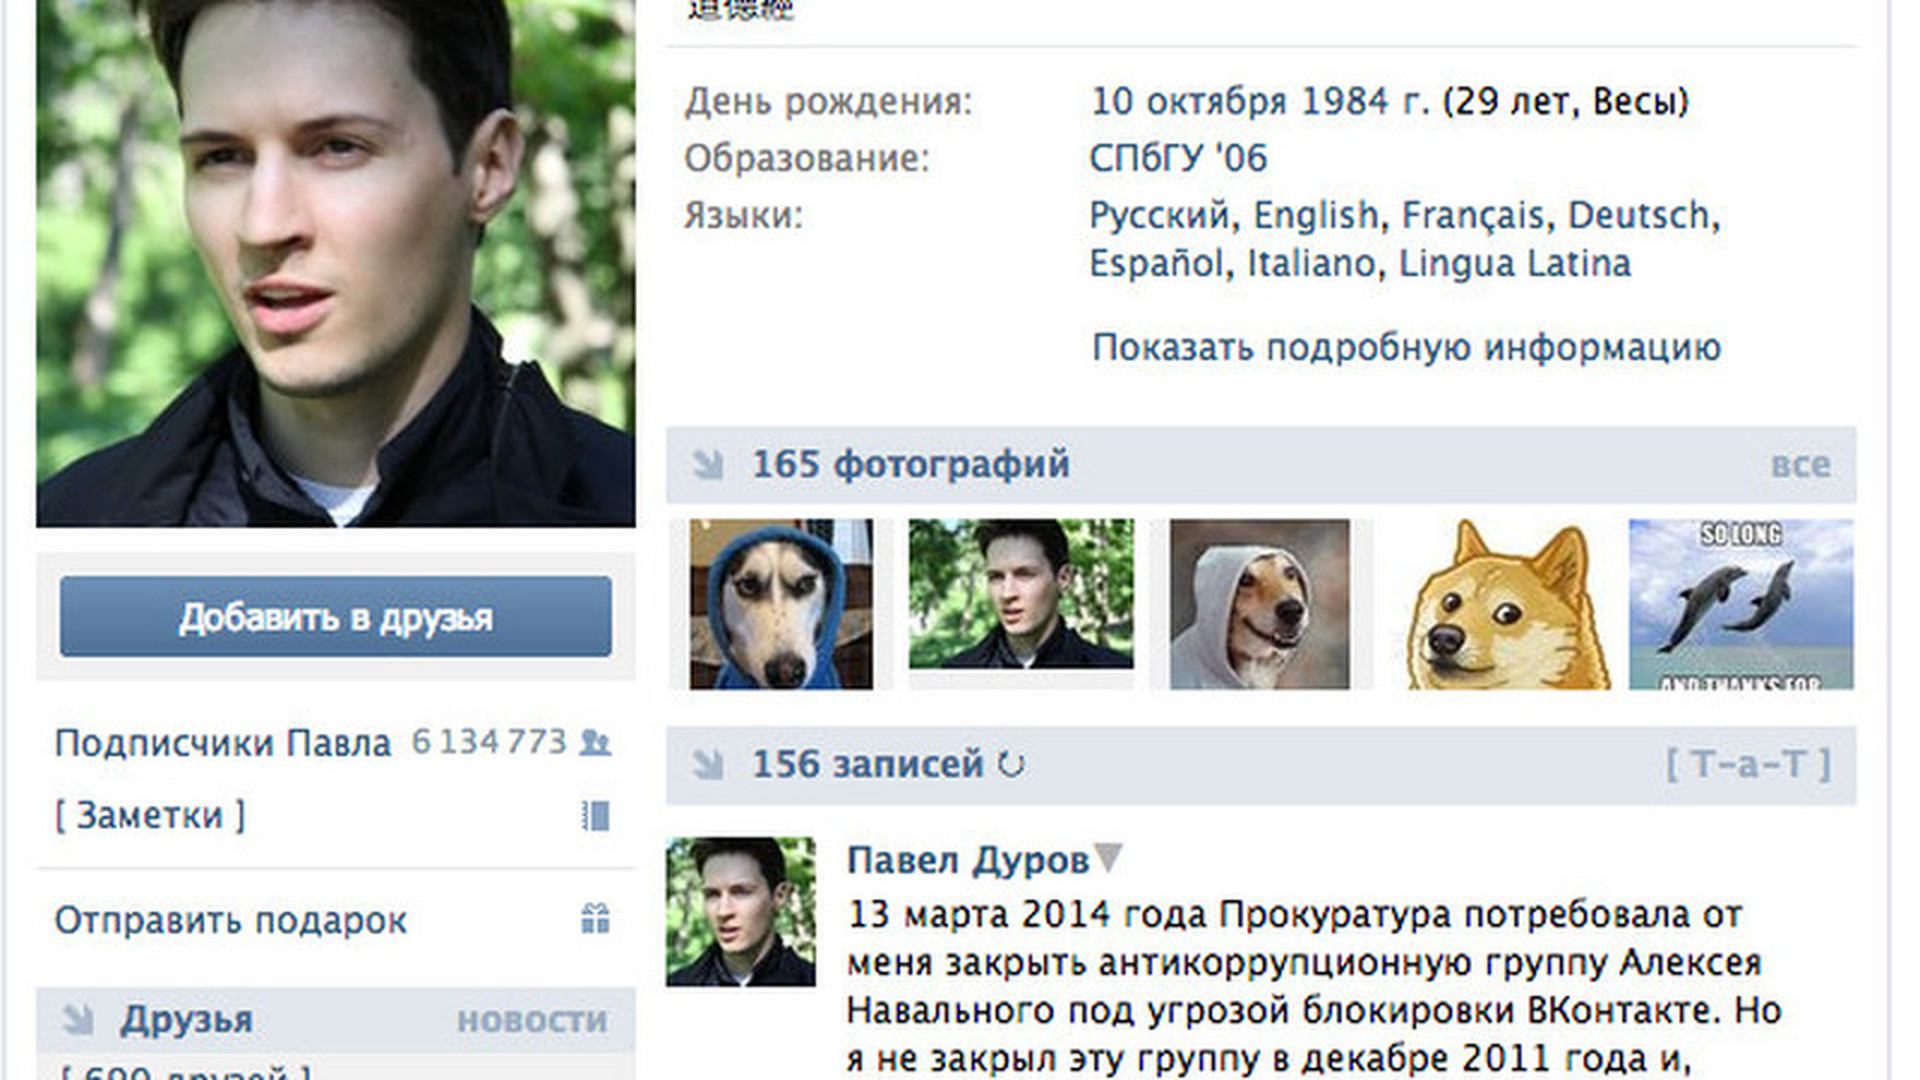 Радостный Павел Дуров